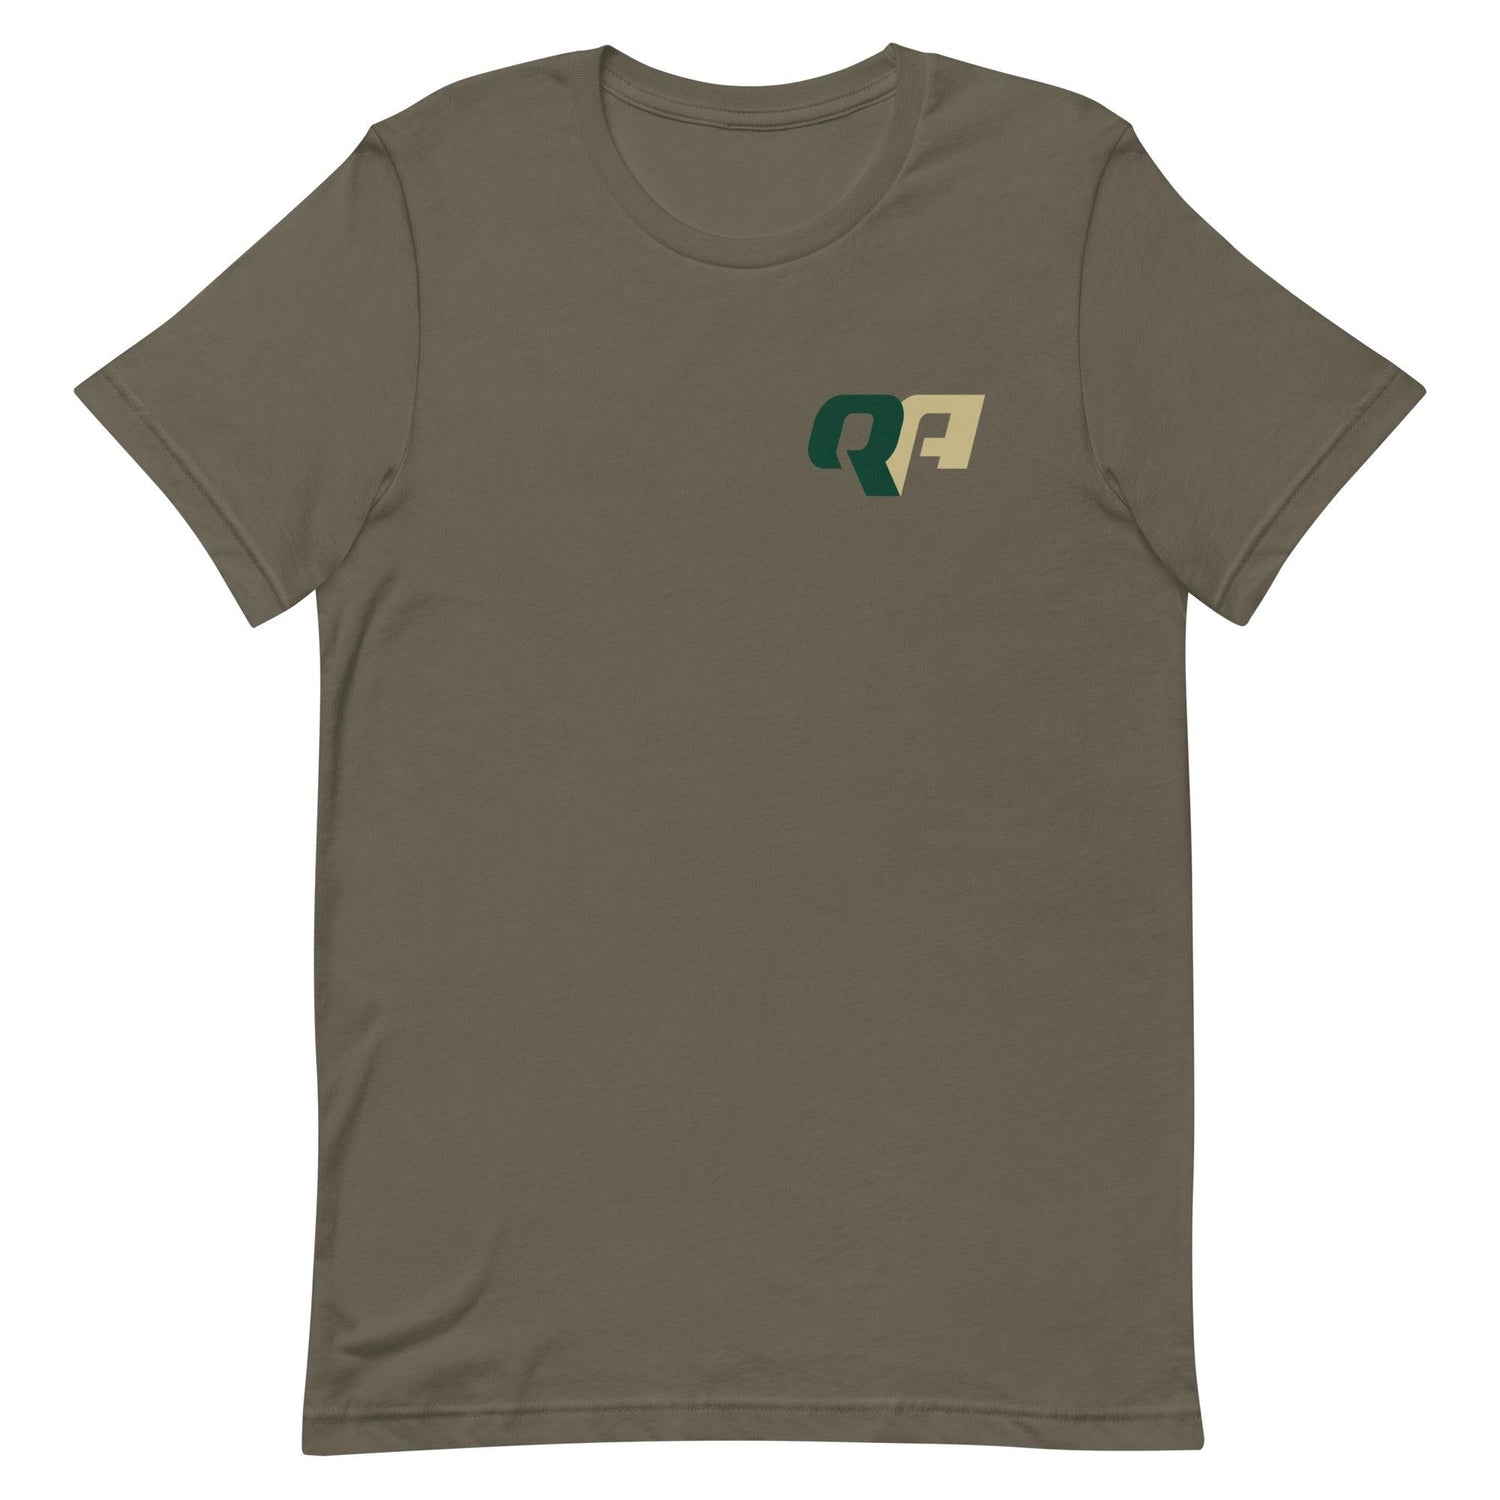 Quadry Adams "Essential" t-shirt - Fan Arch